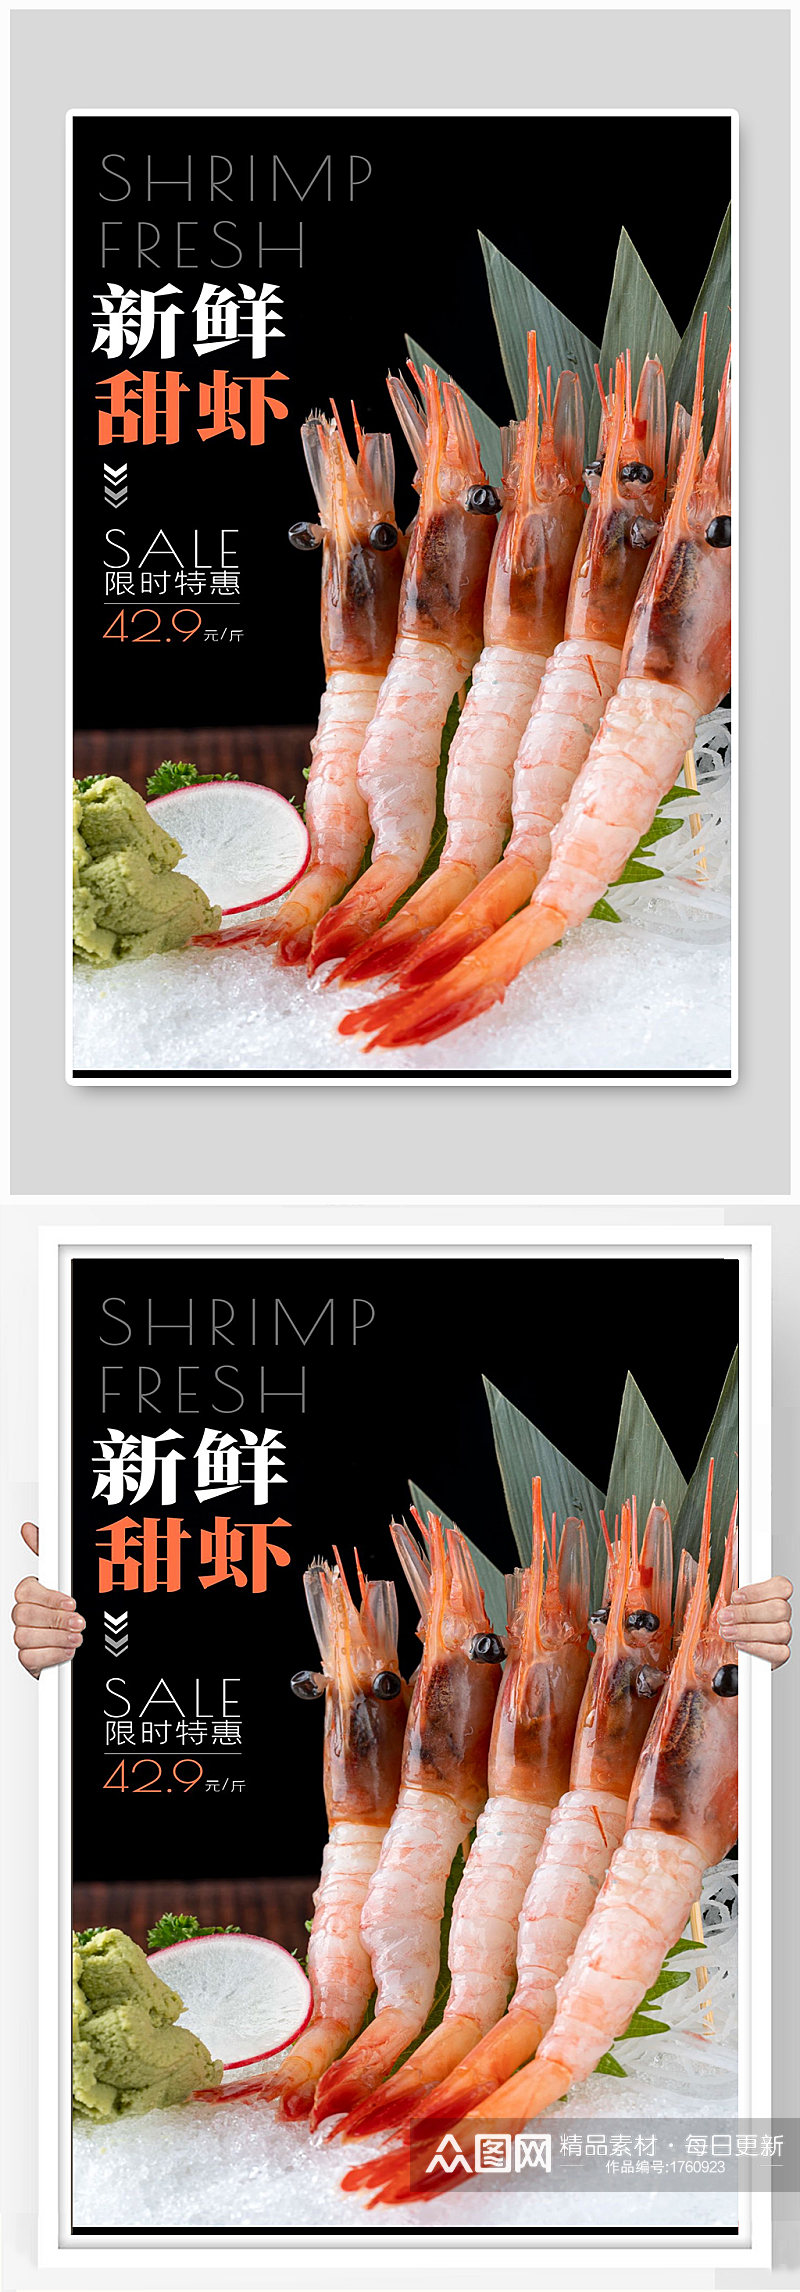 虾新鲜甜虾限时特惠宣传海报制作素材